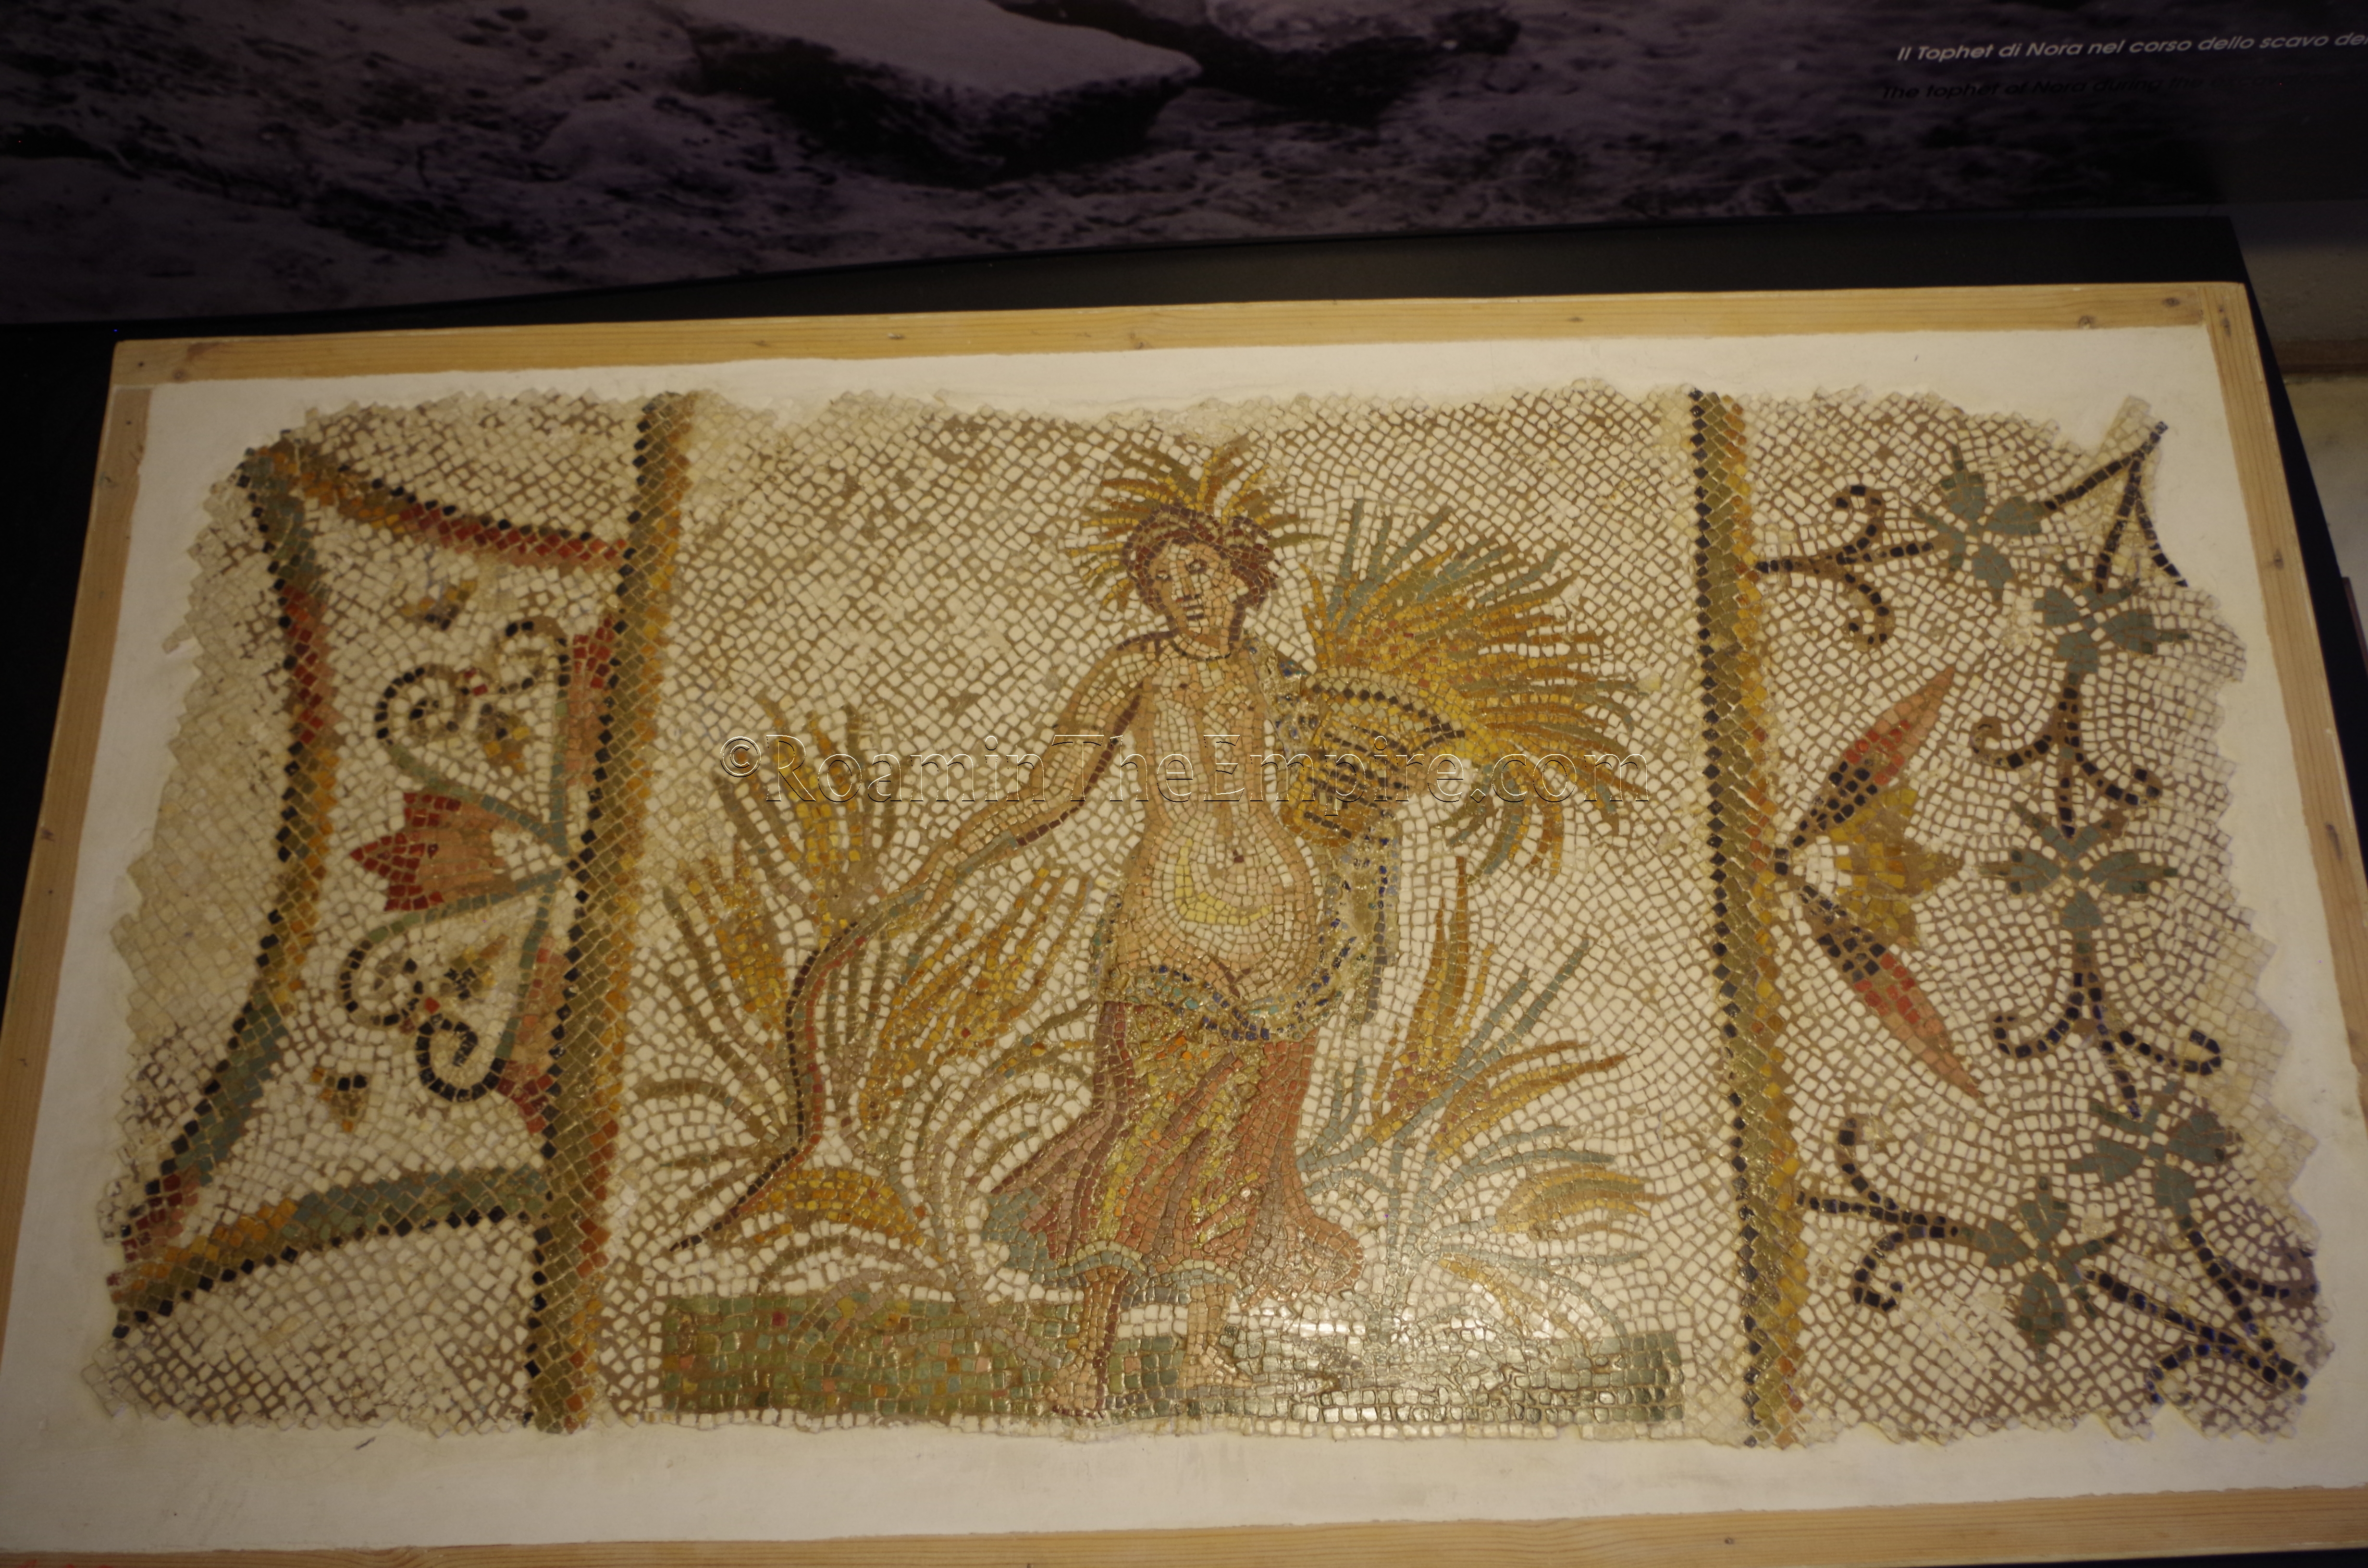 Mosaic of Ceres from Tunisia, in the Museo Archeologico Nazionale di Cagliari.